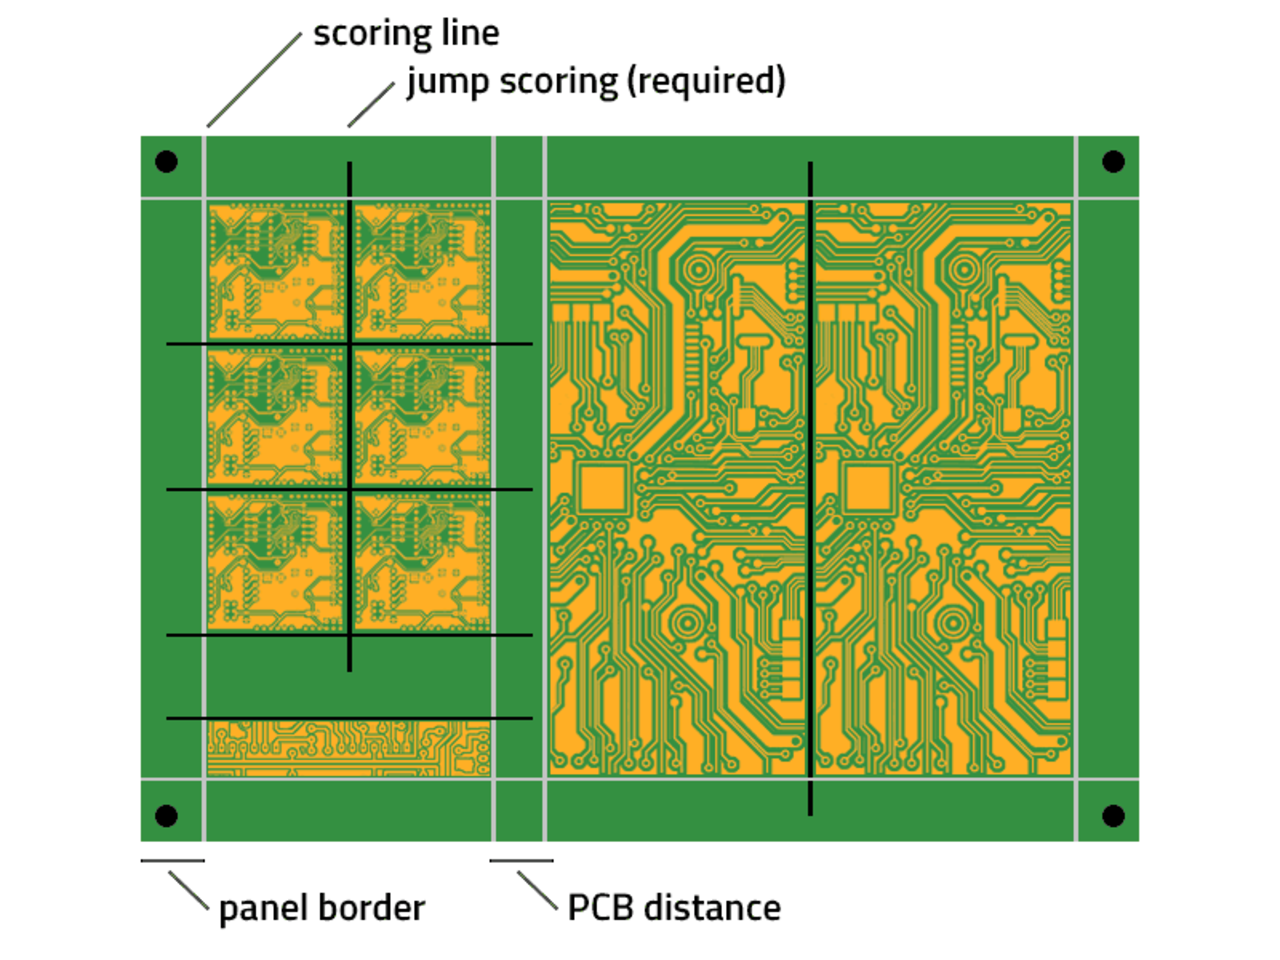 PCB jump scoring mixed panel